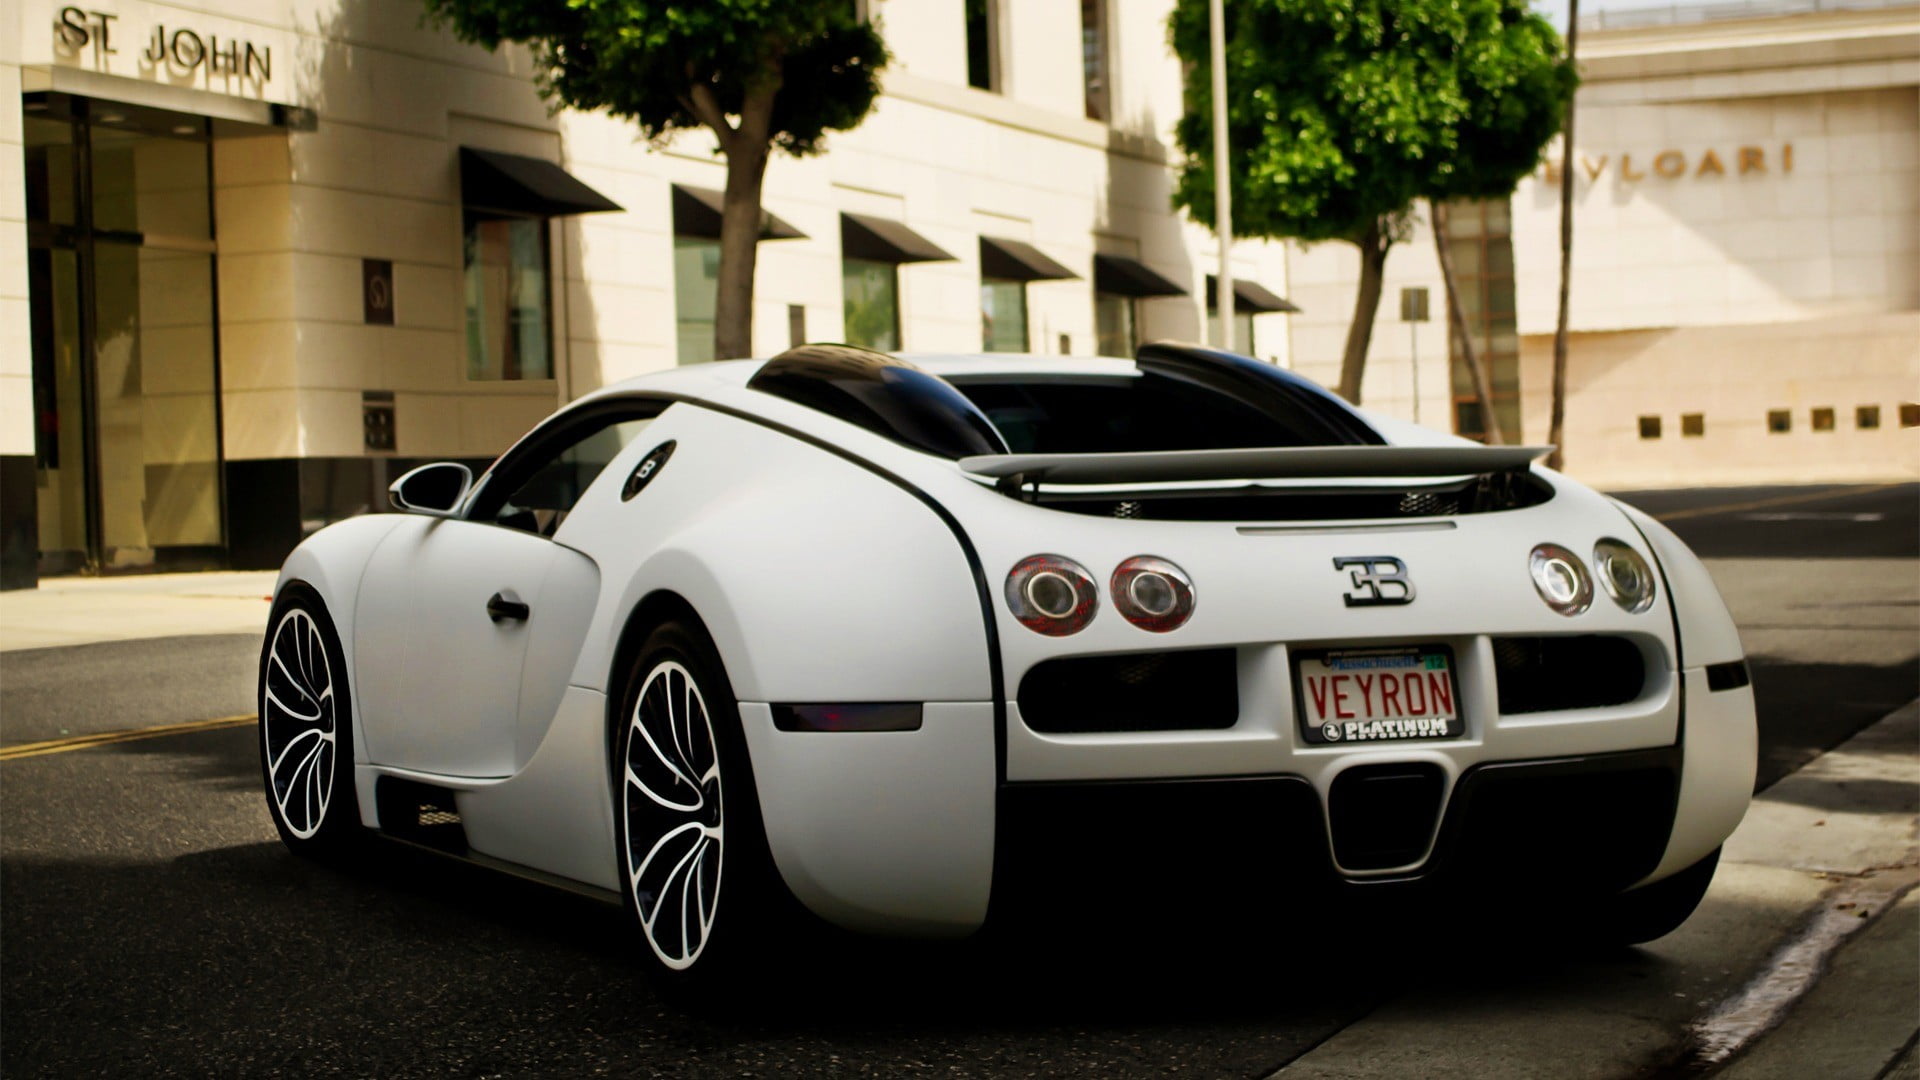 white sports car, car, Bugatti Veyron